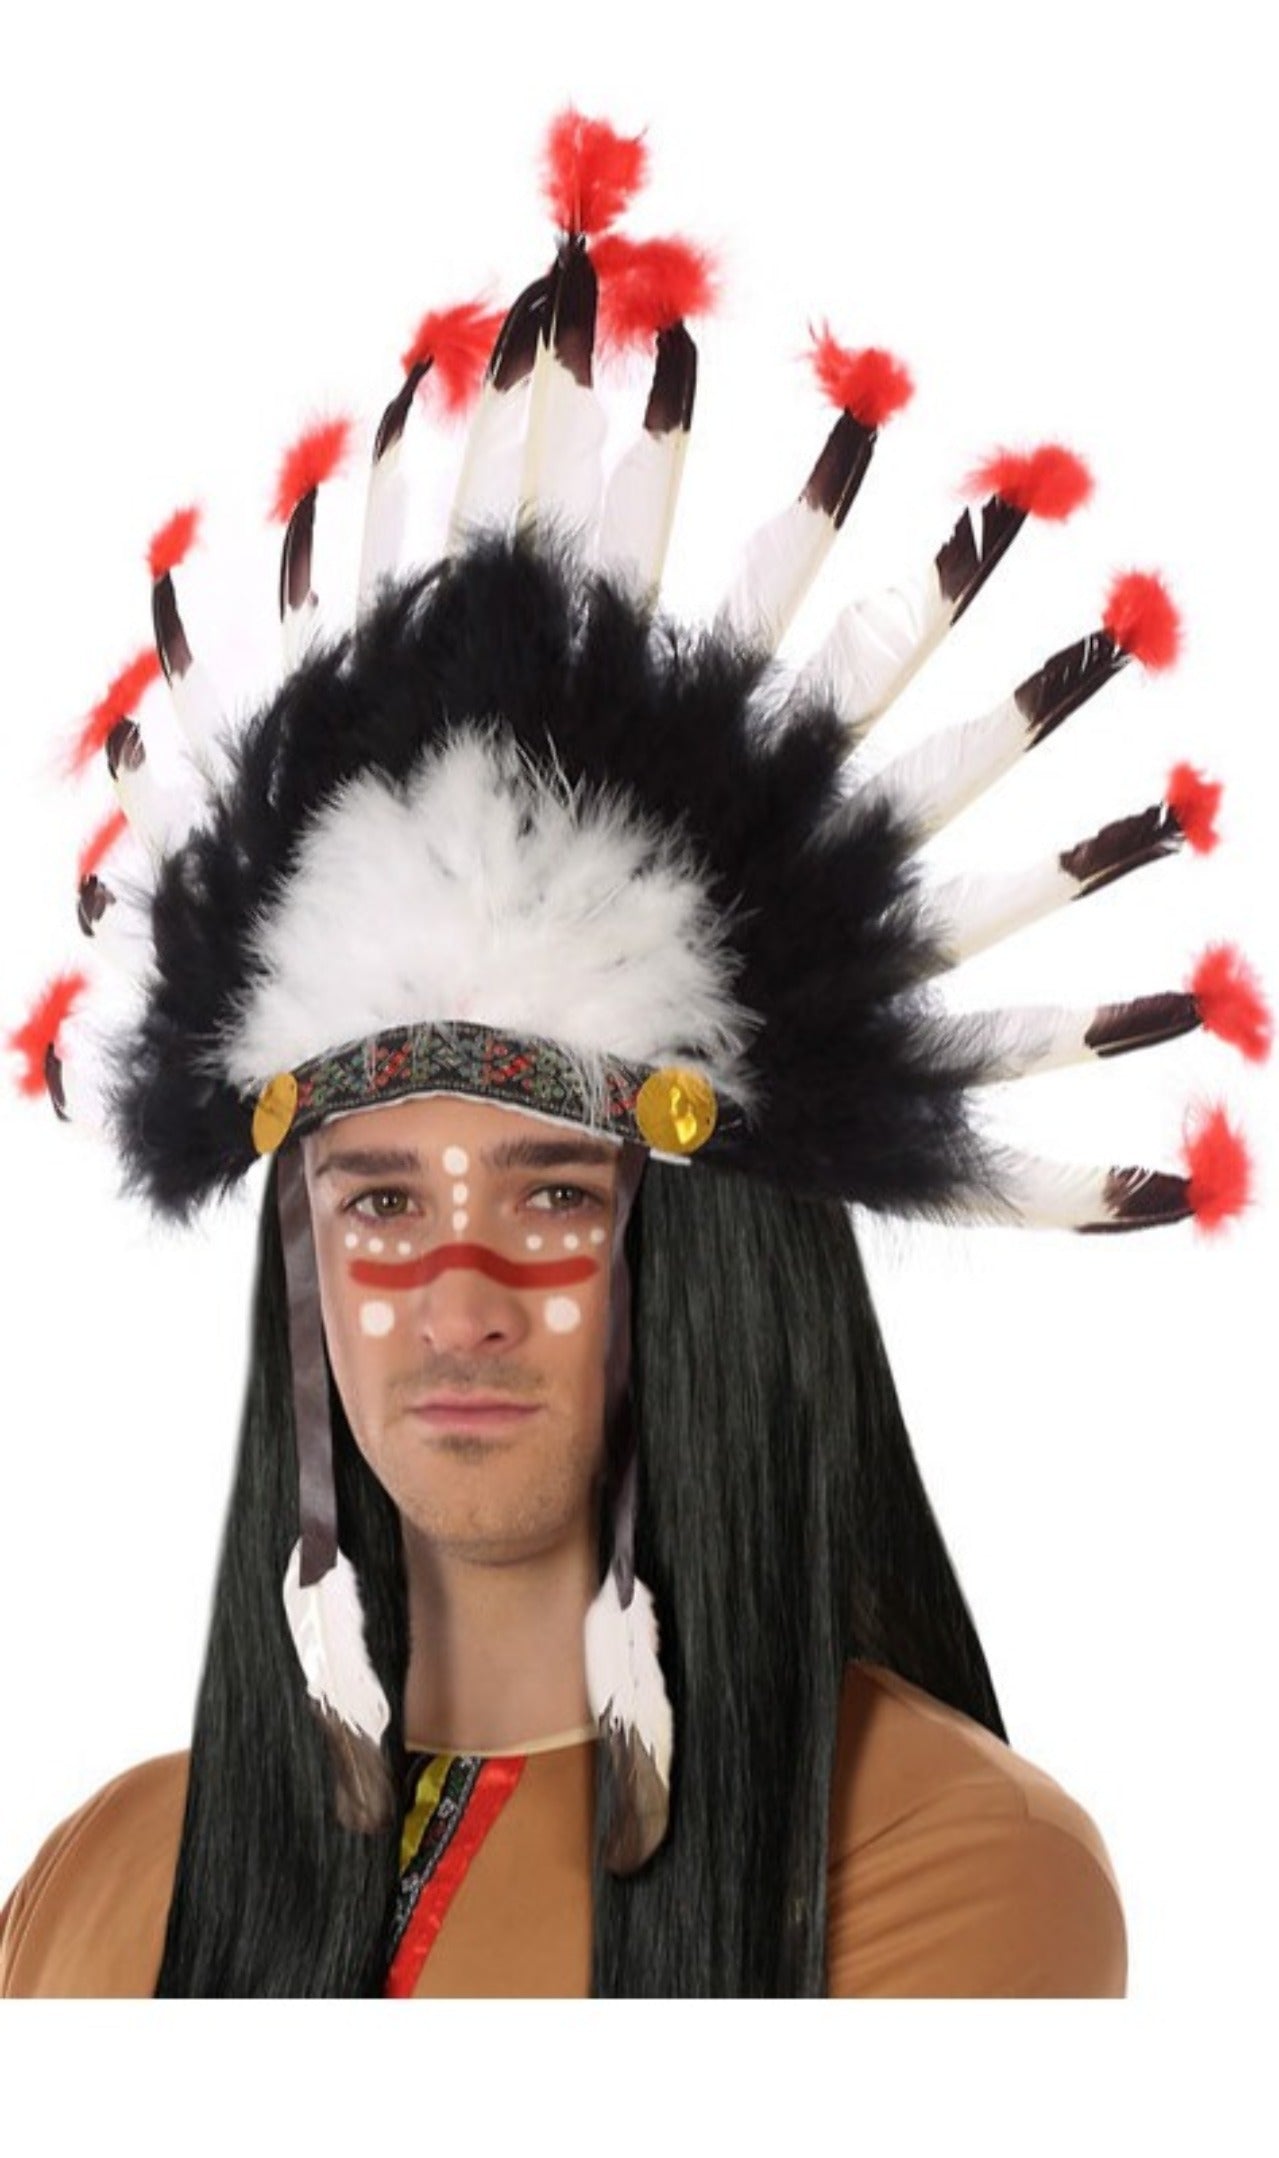 Penacho de Indio Cherokee para adulto